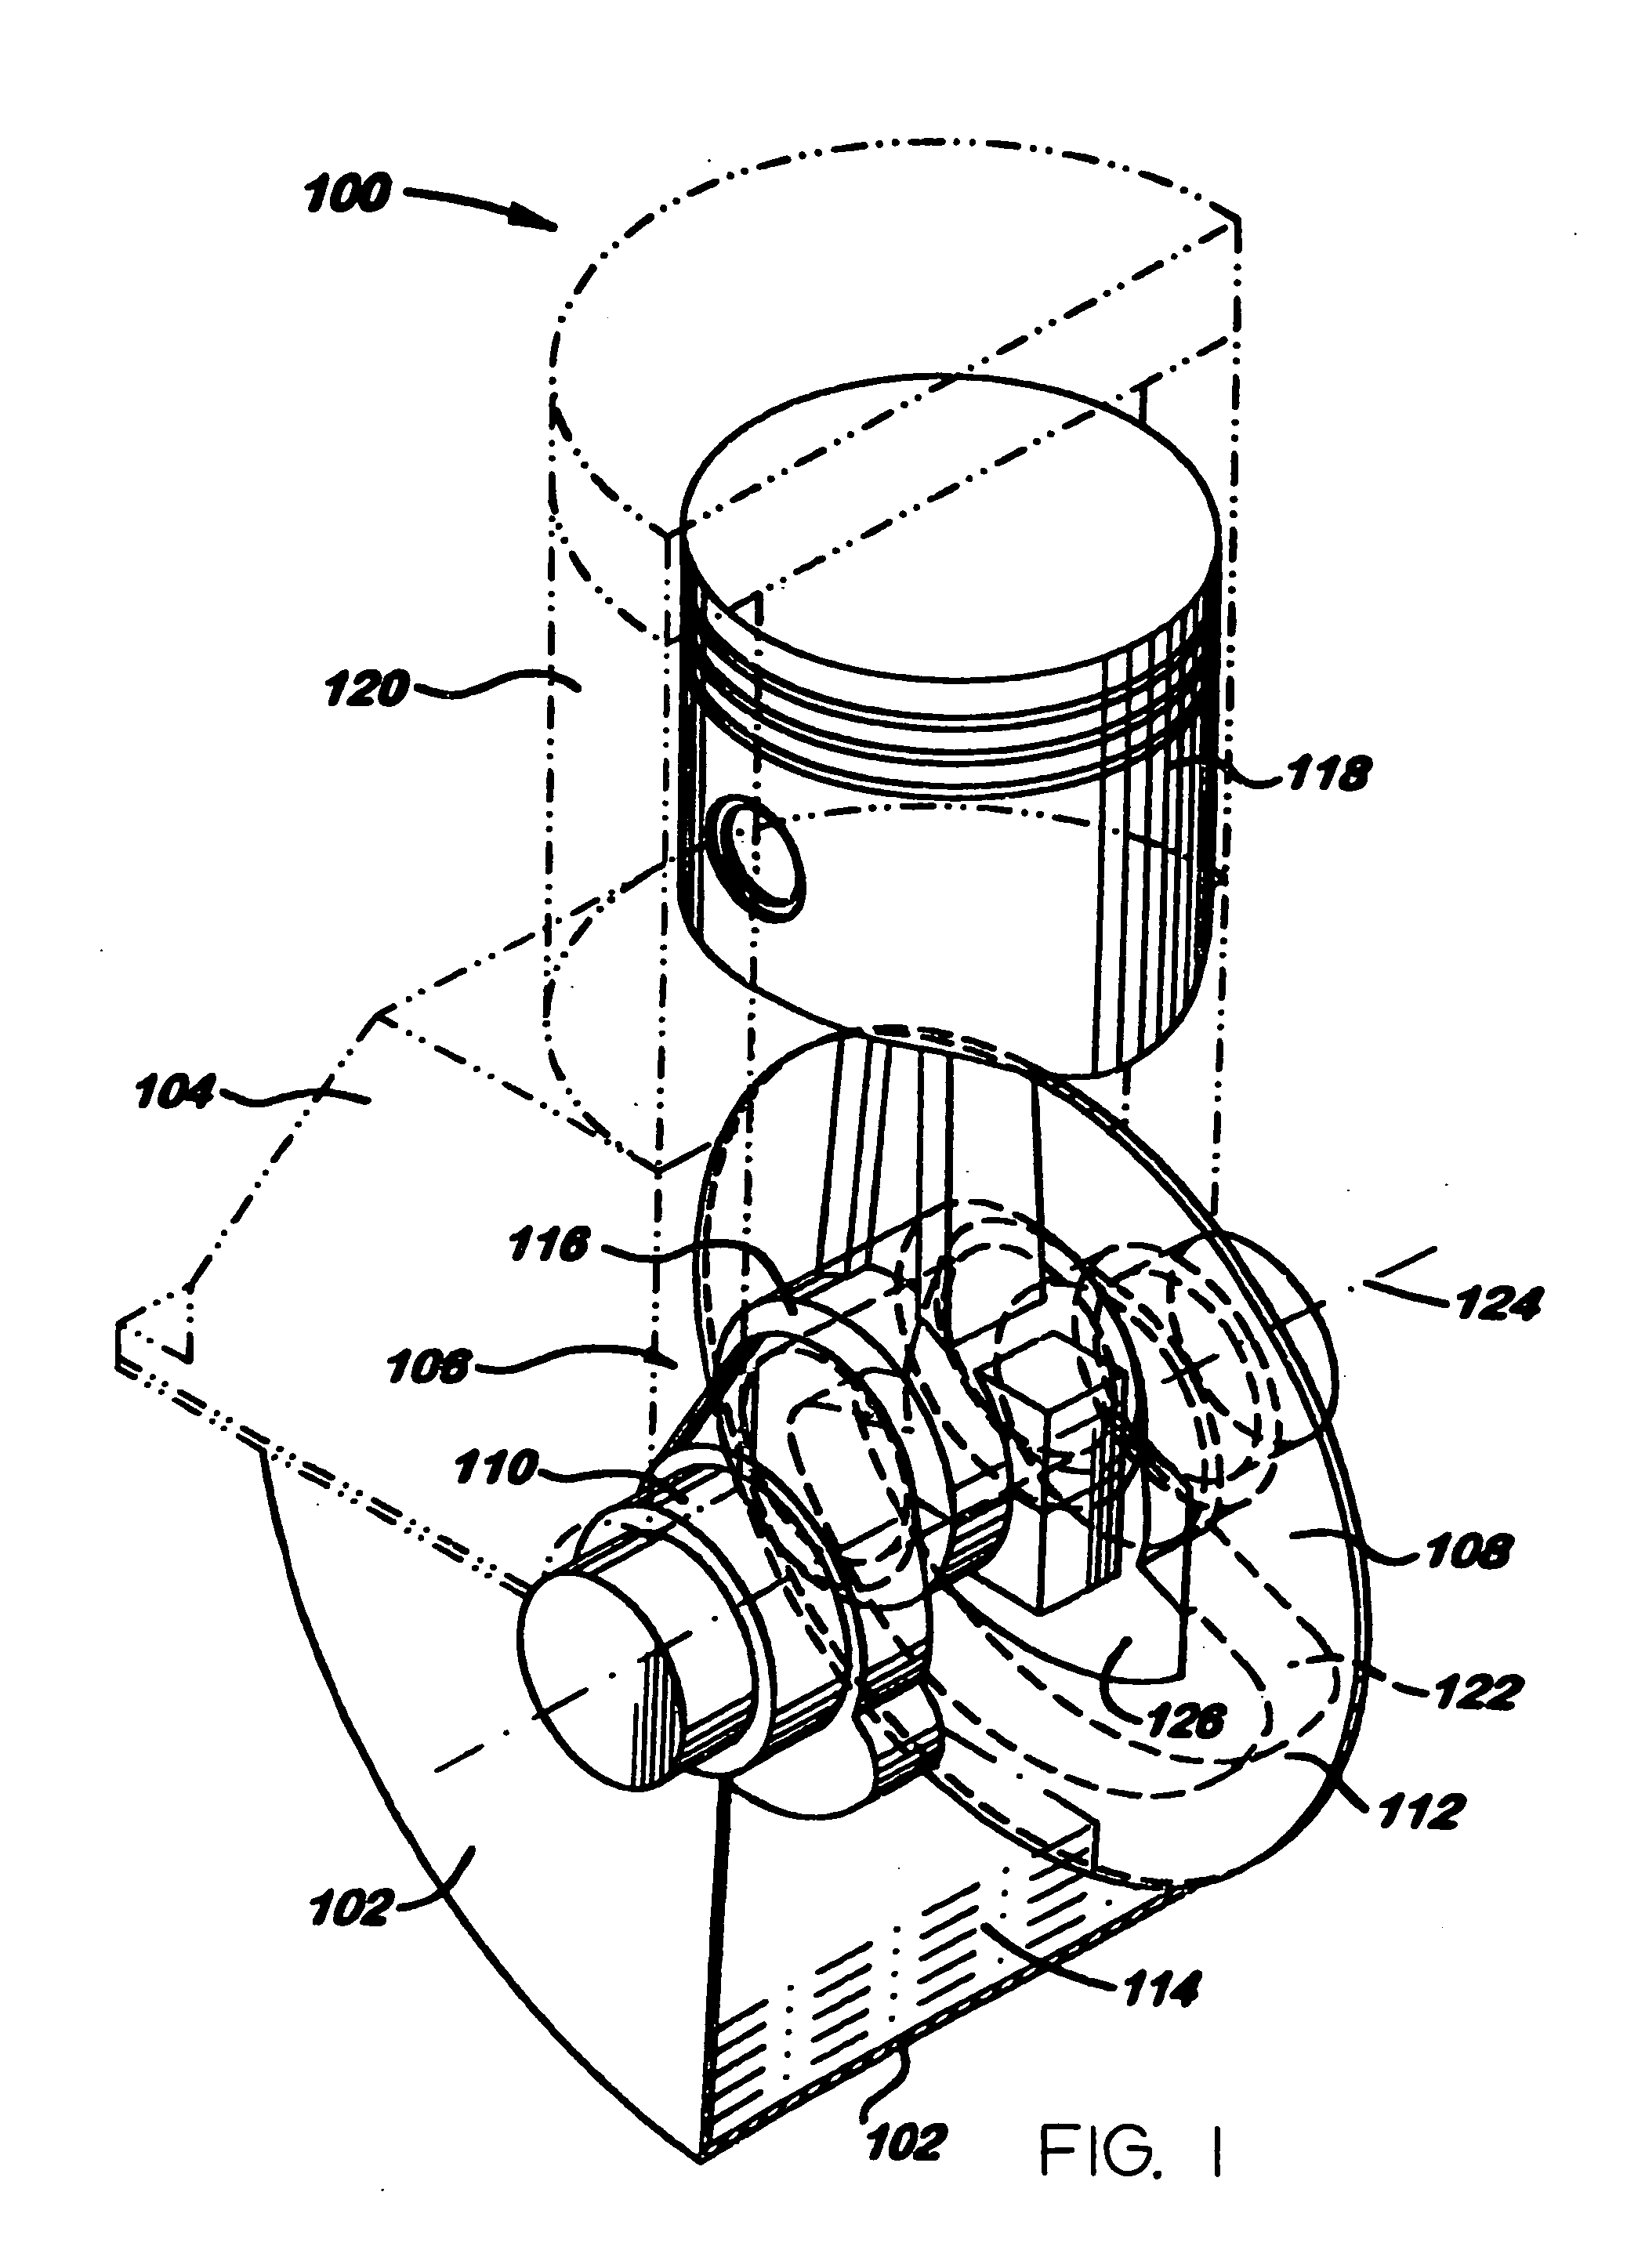 Air compressor including a disk oil slinger assembly